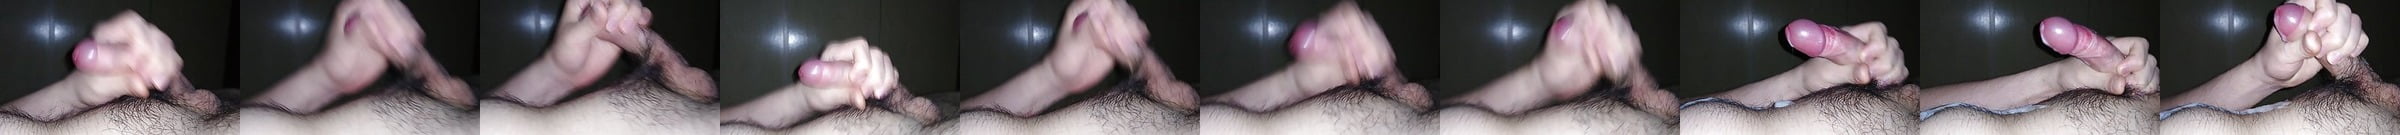 Four Uncut Foreskin Cumshots Compilation Big Cock Porn 39 XHamster